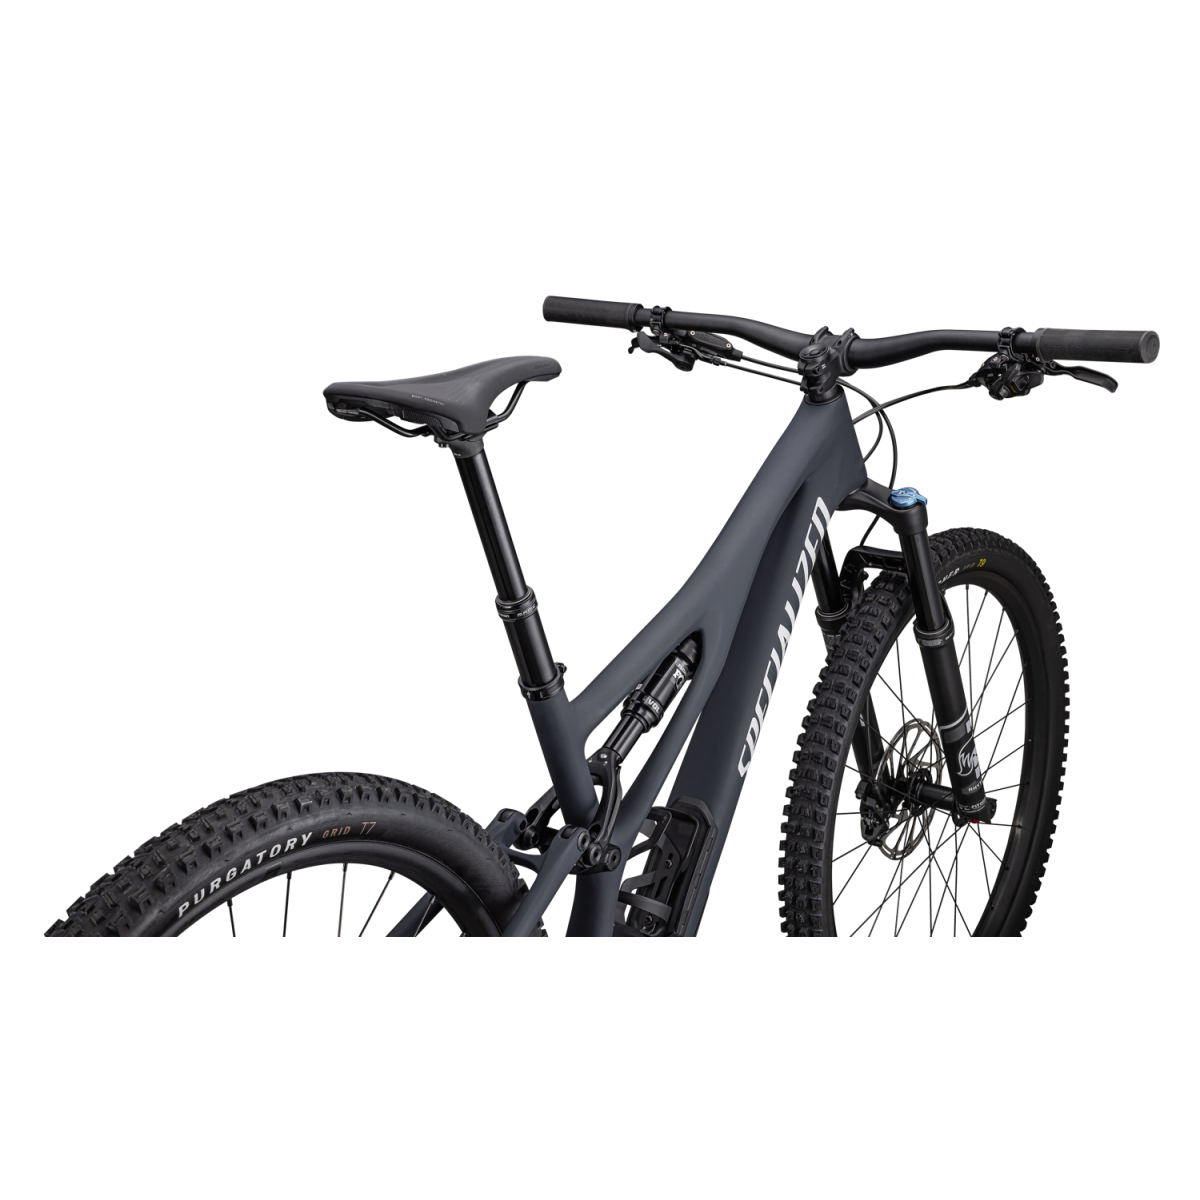 Specialized Stumpjumper Comp kalnų dviratis / Satin Dark Navy - Dove Grey